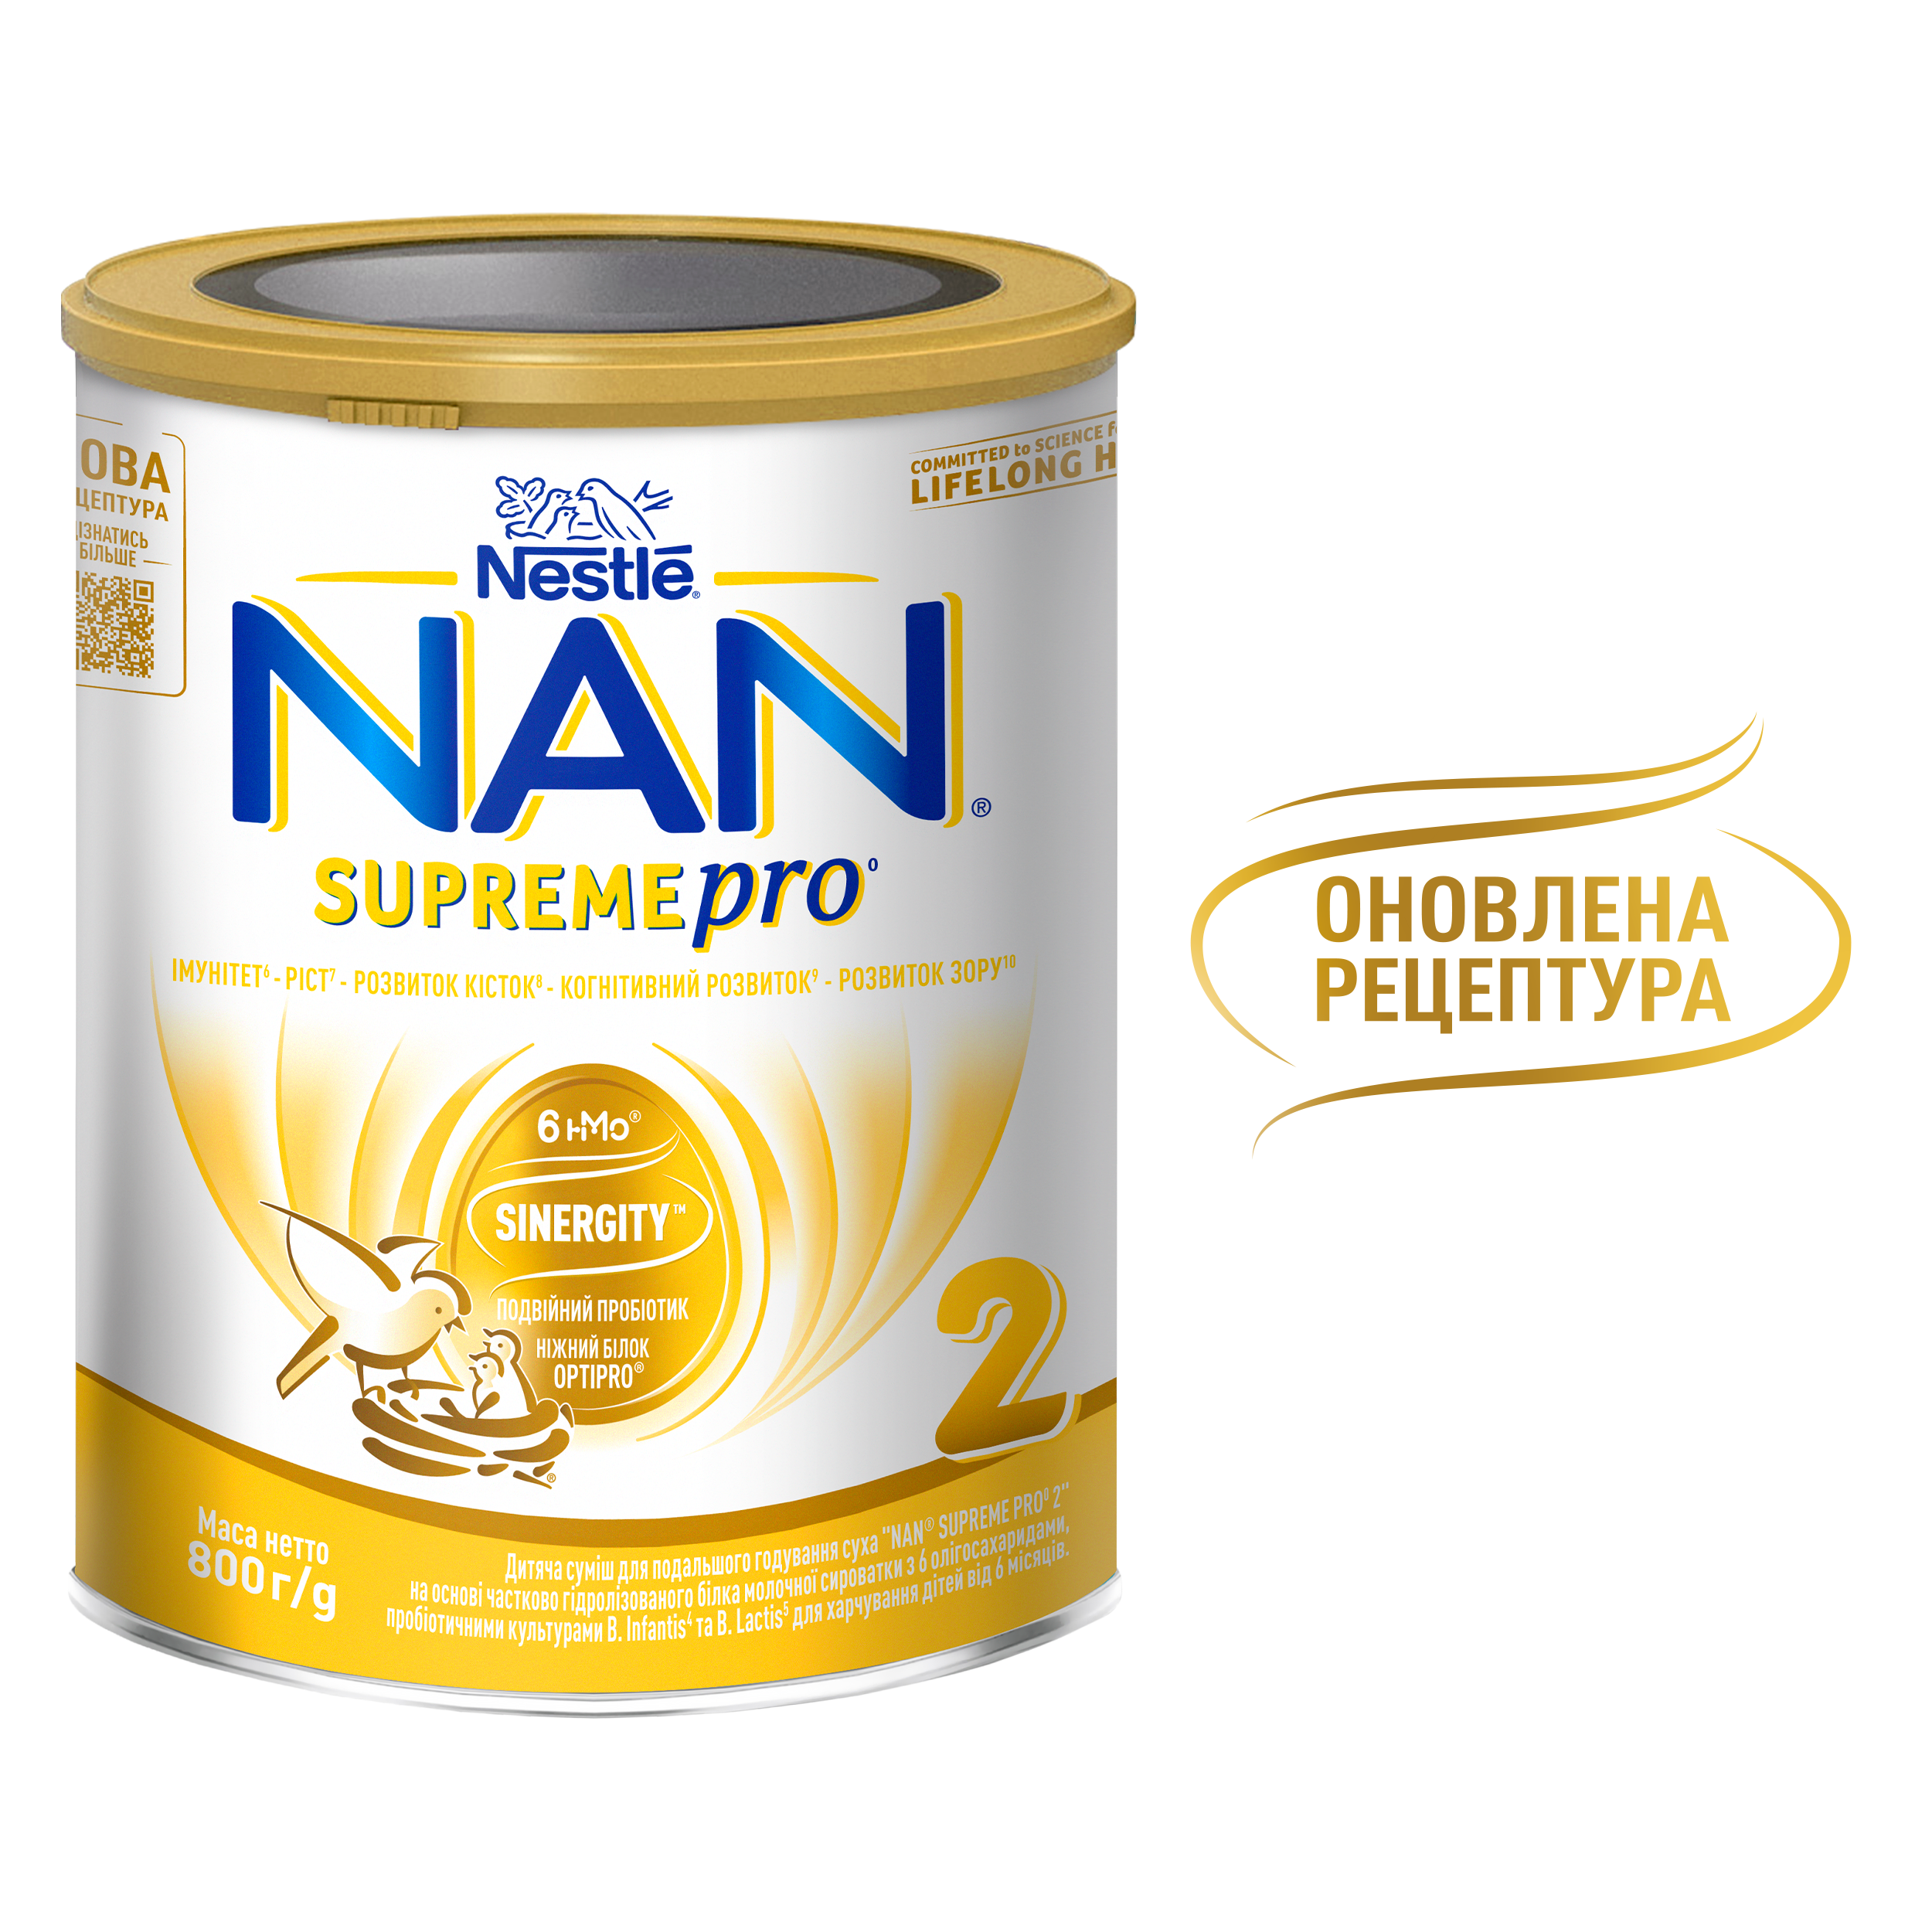 Суха молочна суміш NAN Supreme Pro 2, з олігосахаридами, 800 г - фото 7